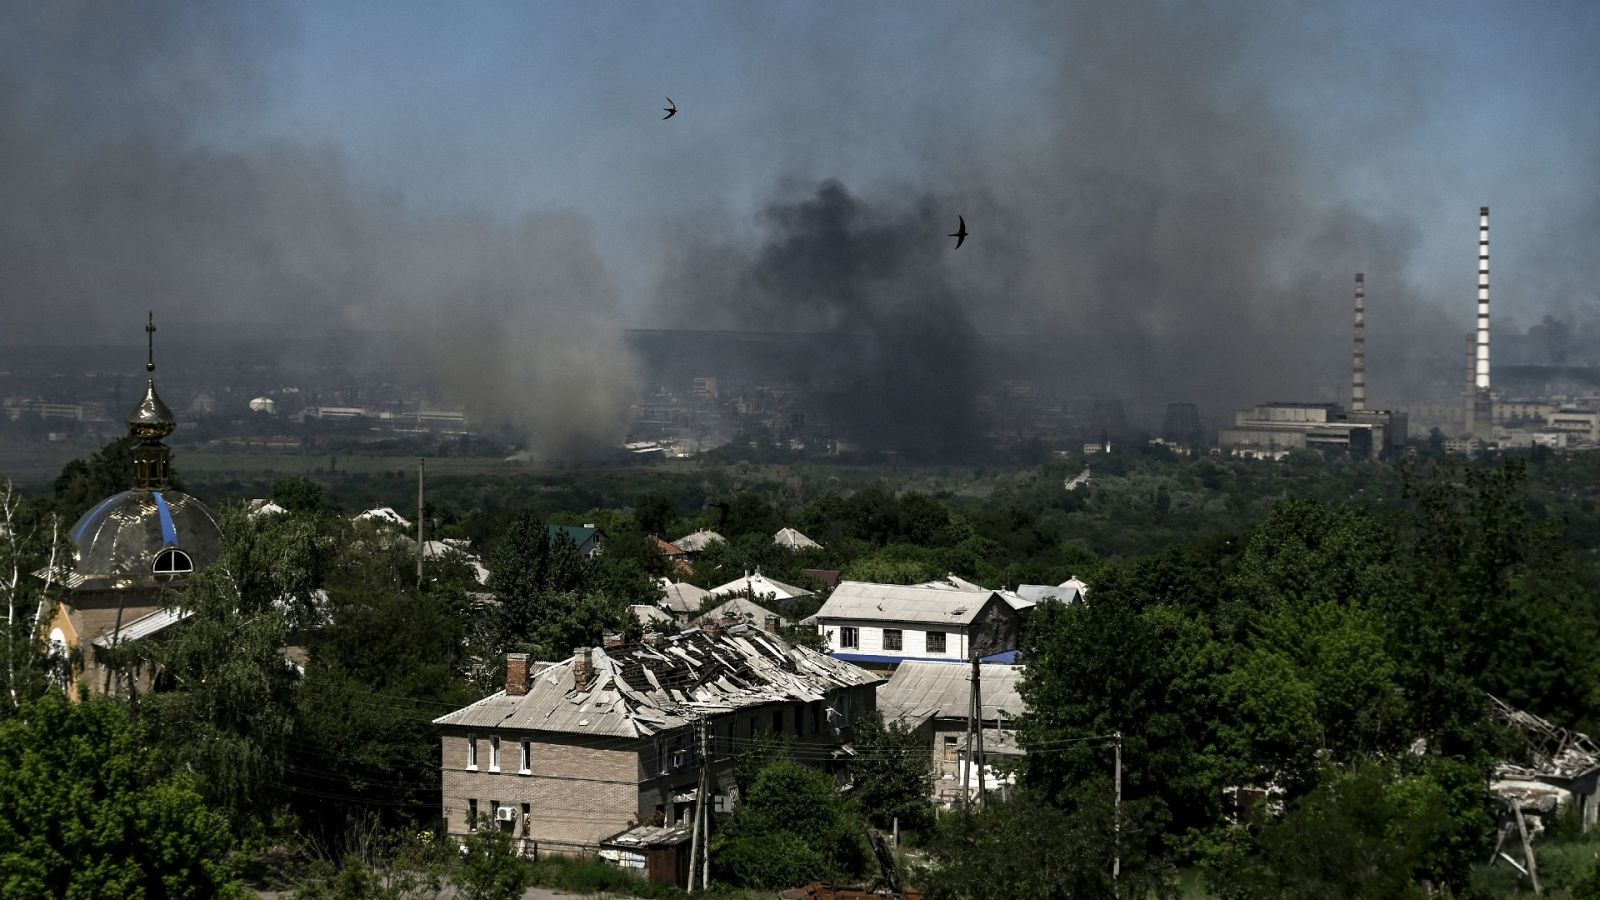 Edificios dañados en la ciudad de Lisichansk. Al fondo, el humo se eleva sobre la ciudad cerca de Severodonetsk, ambas en la región de Donetsk, este de Ucrania. Foto: ARIS MESSINIS / AFP